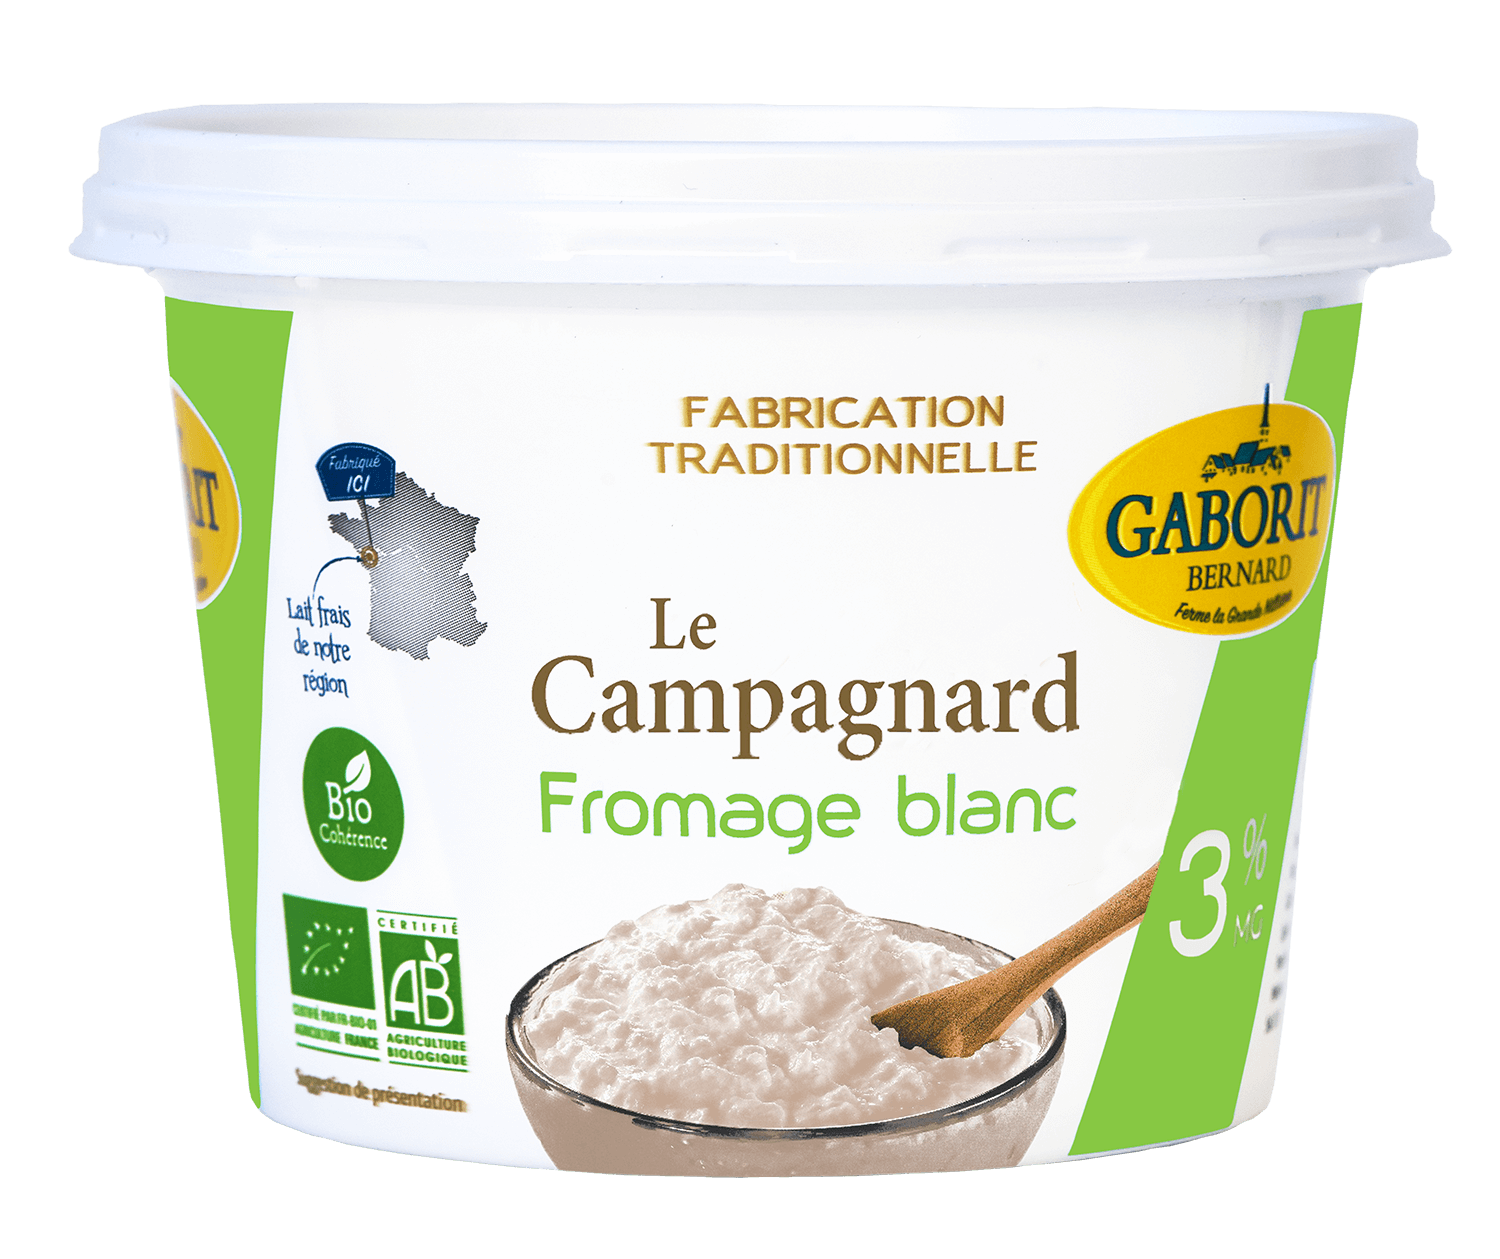 Gaborit Fromage blanc Campagnard 3% bio 500g